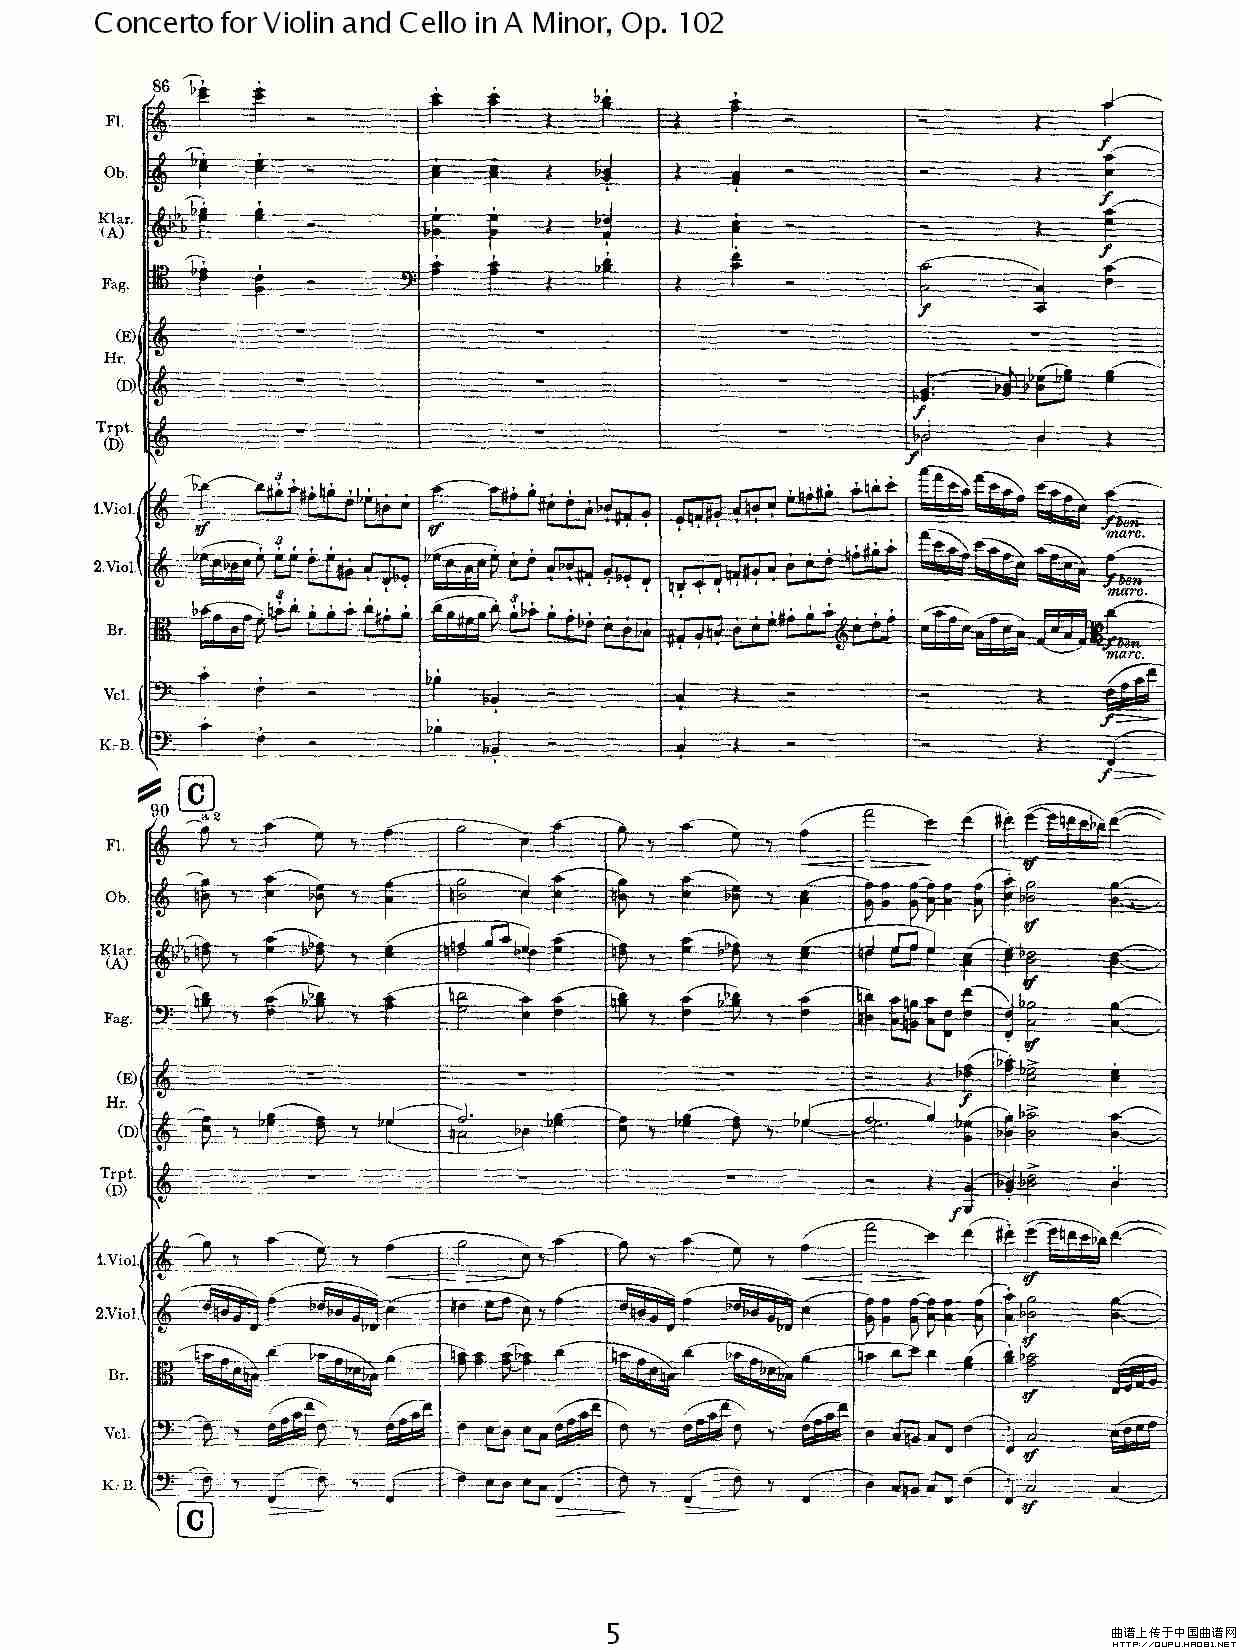 A小调小提琴与大提琴协奏曲, Op.102第一乐章